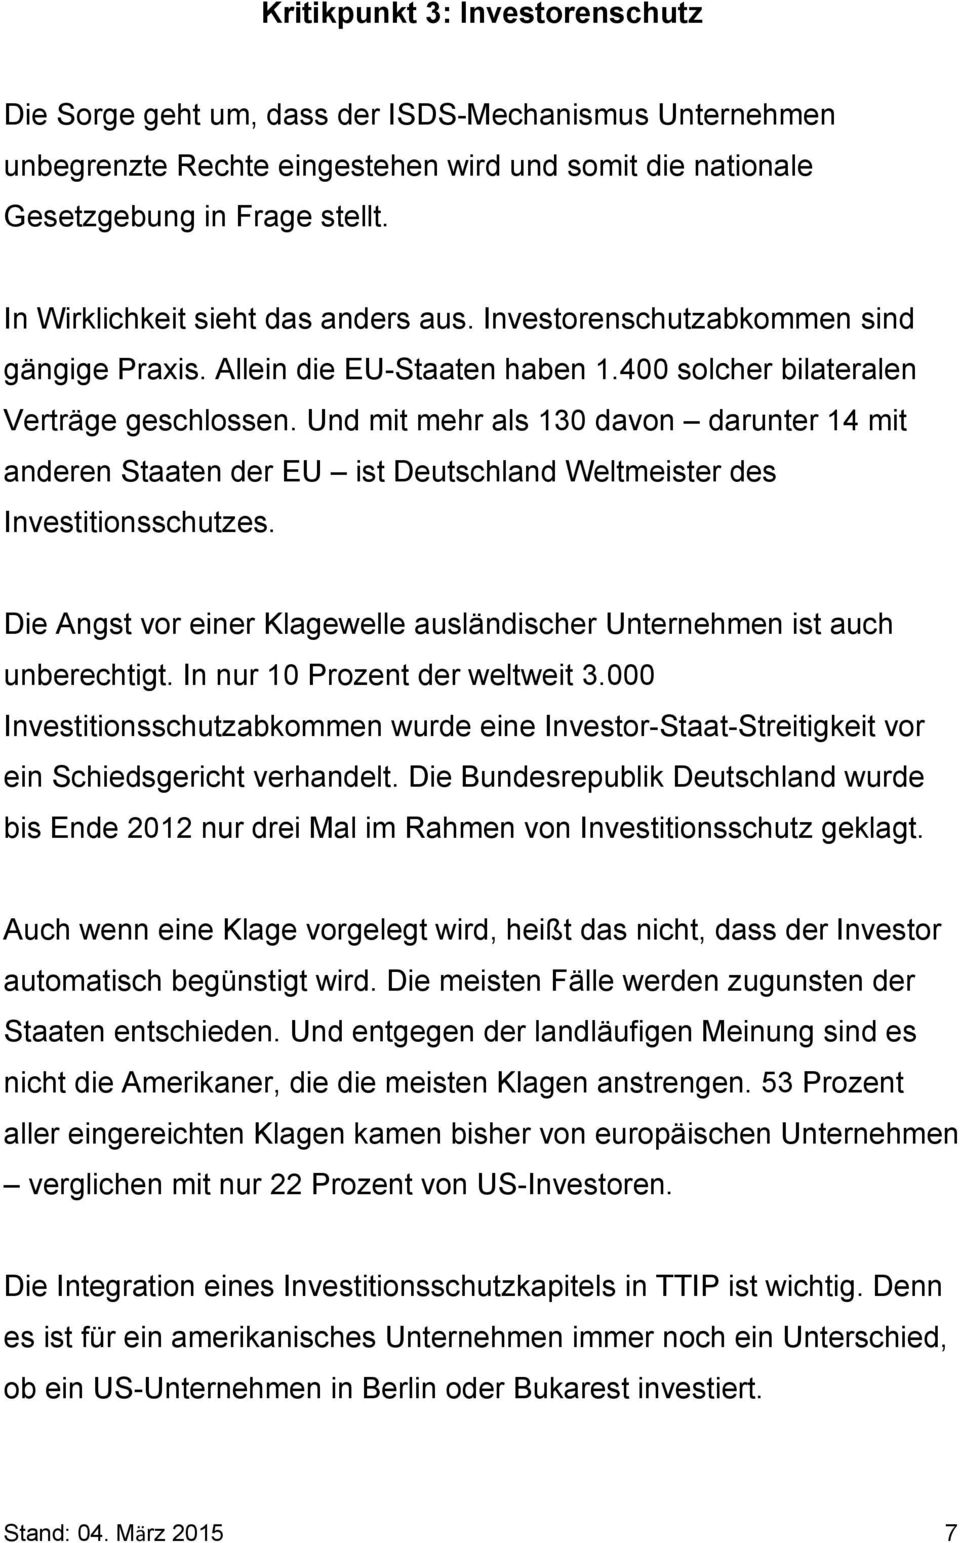 Und mit mehr als 130 davon darunter 14 mit anderen Staaten der EU ist Deutschland Weltmeister des Investitionsschutzes. Die Angst vor einer Klagewelle ausländischer Unternehmen ist auch unberechtigt.